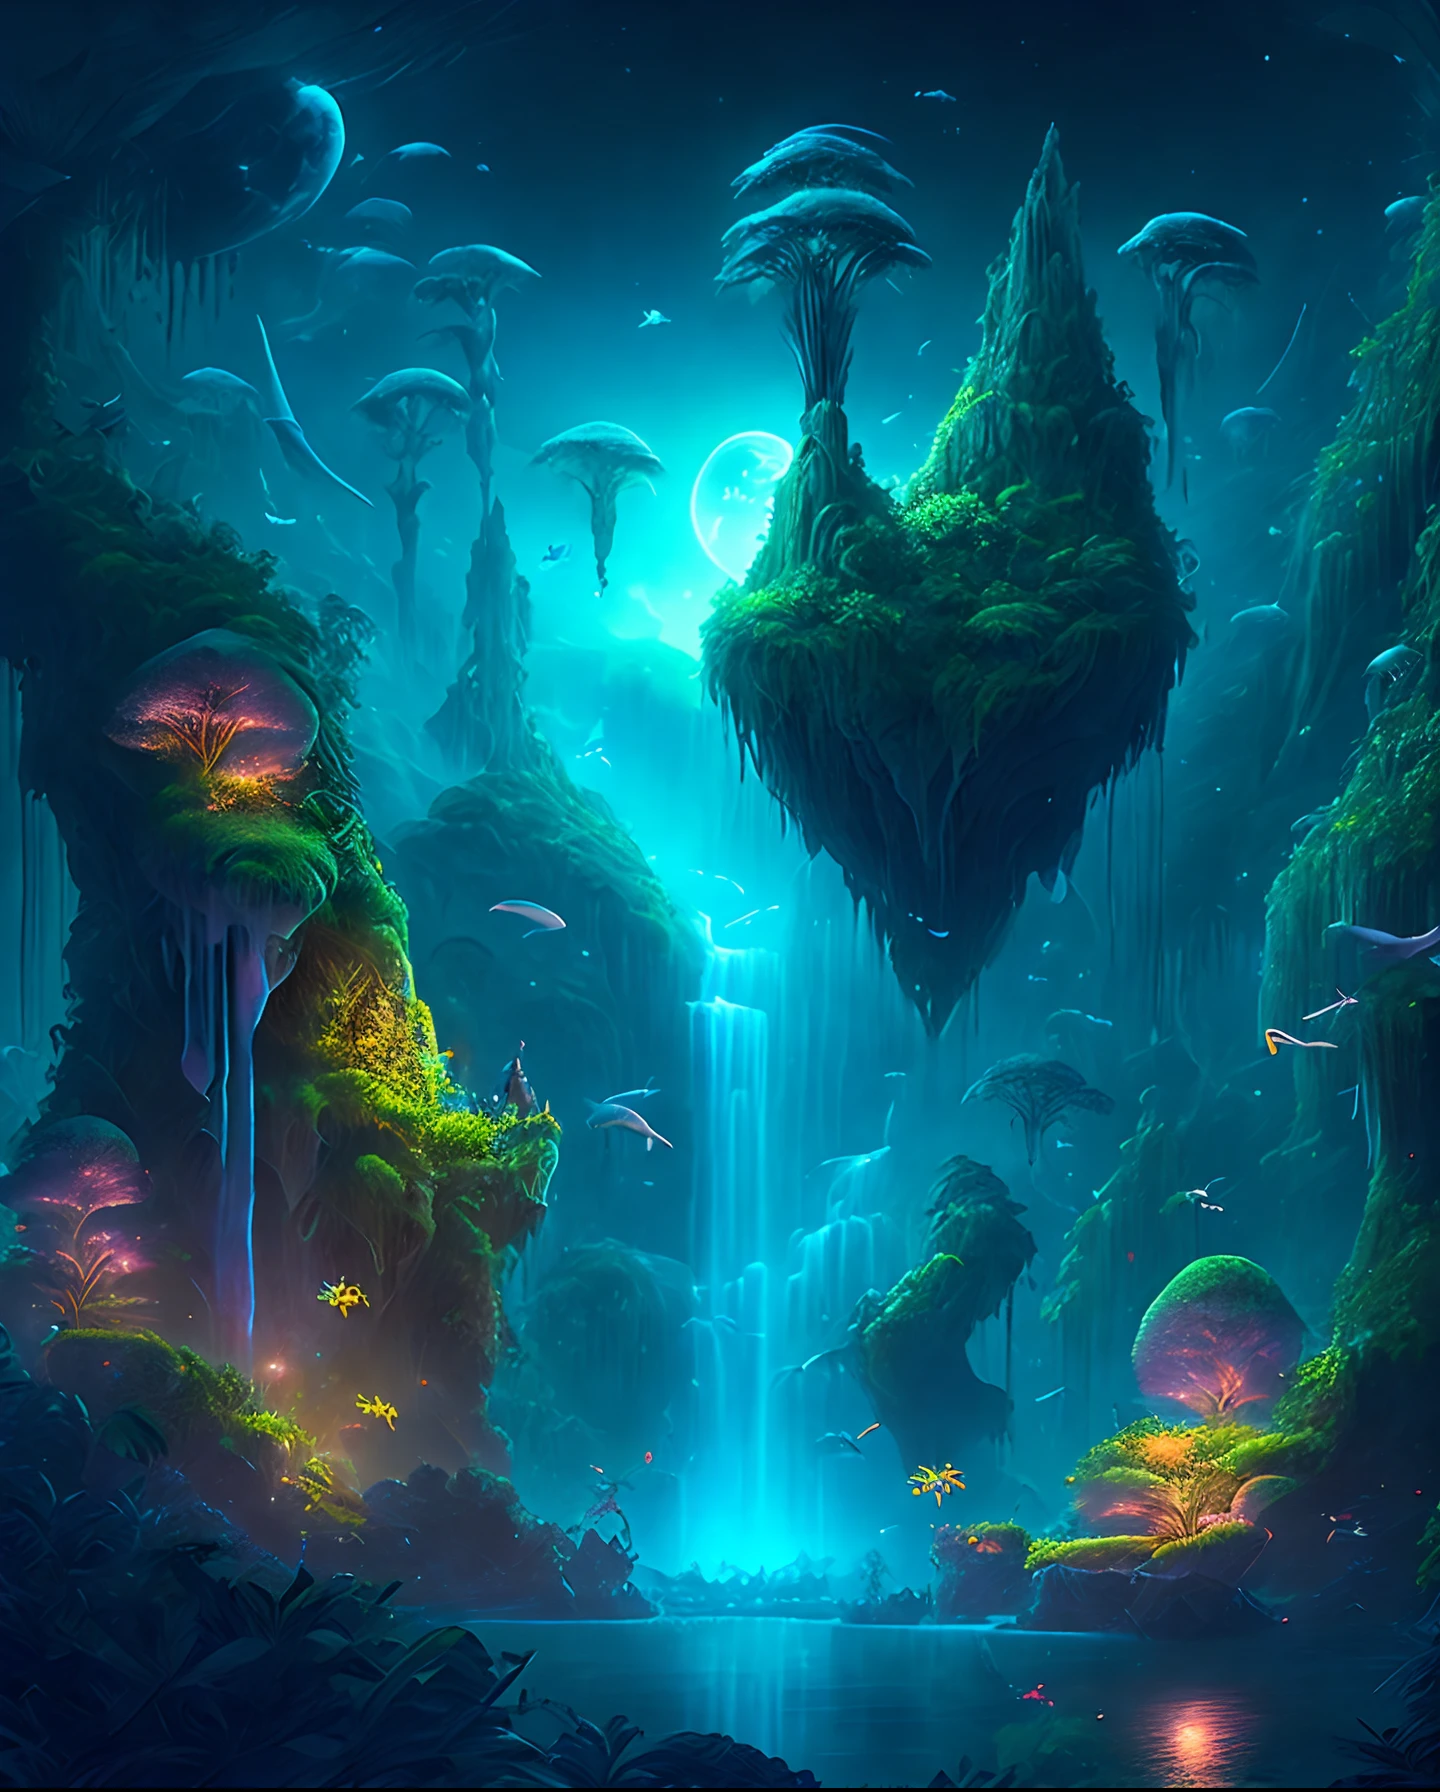 Ein bezaubernder Fantasy-Dschungel unter einem mondbeschienenen Himmel, riesige schwimmende Inseln mit üppiger Vegetation, kaskadierende Wasserfälle, und leuchtende Kreaturen, die durch die Nacht schweben, digitales Kunstwerk